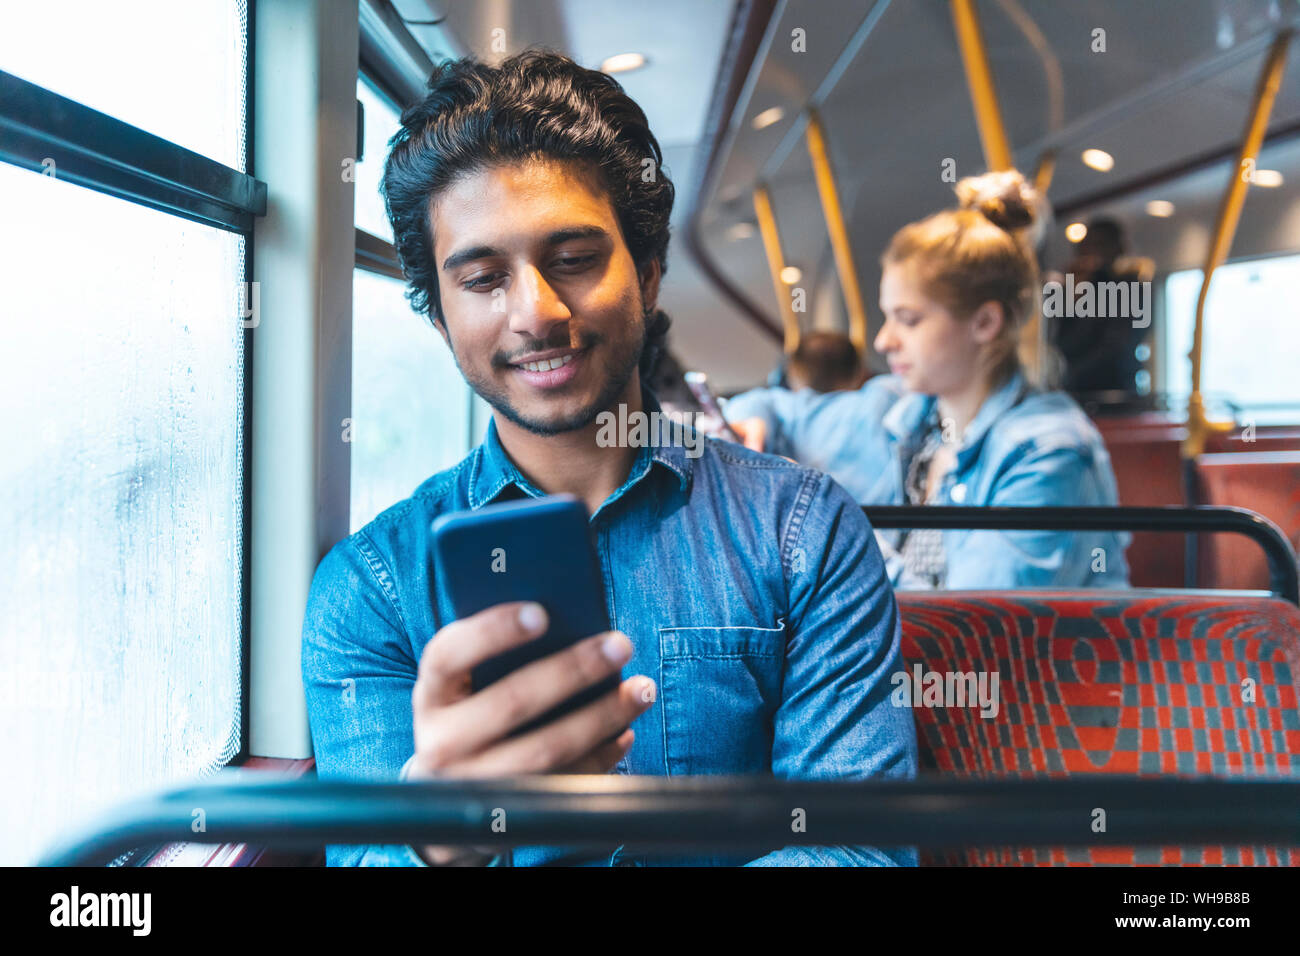 Portrait de jeune homme voyageant par autobus à la recherche de téléphone cellulaire, London, UK Banque D'Images